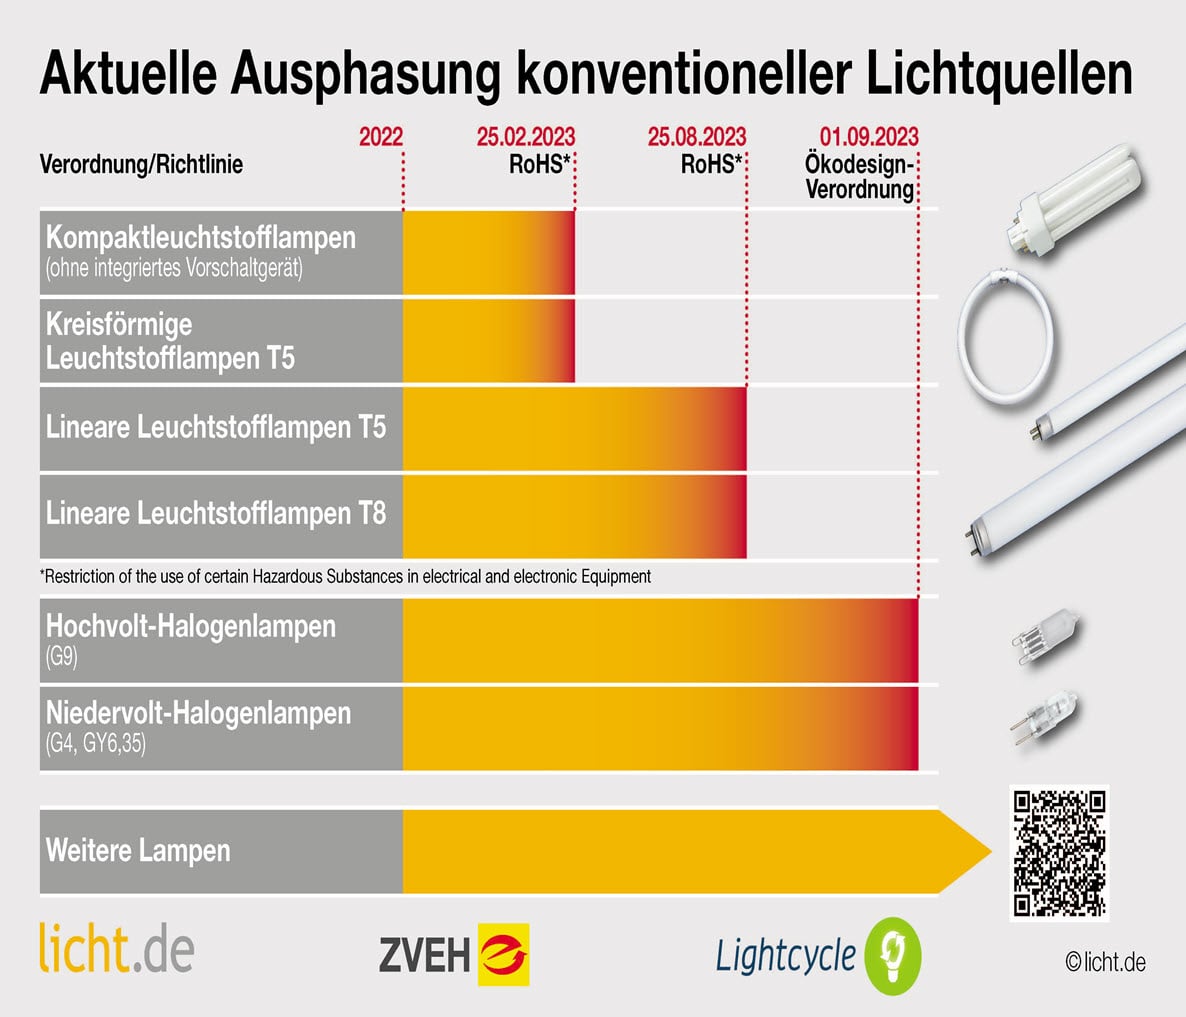 Grafik zu Ausphasungszeitpunkten von Leuchtstofflampen und Halogenlampen. | © Licht.de